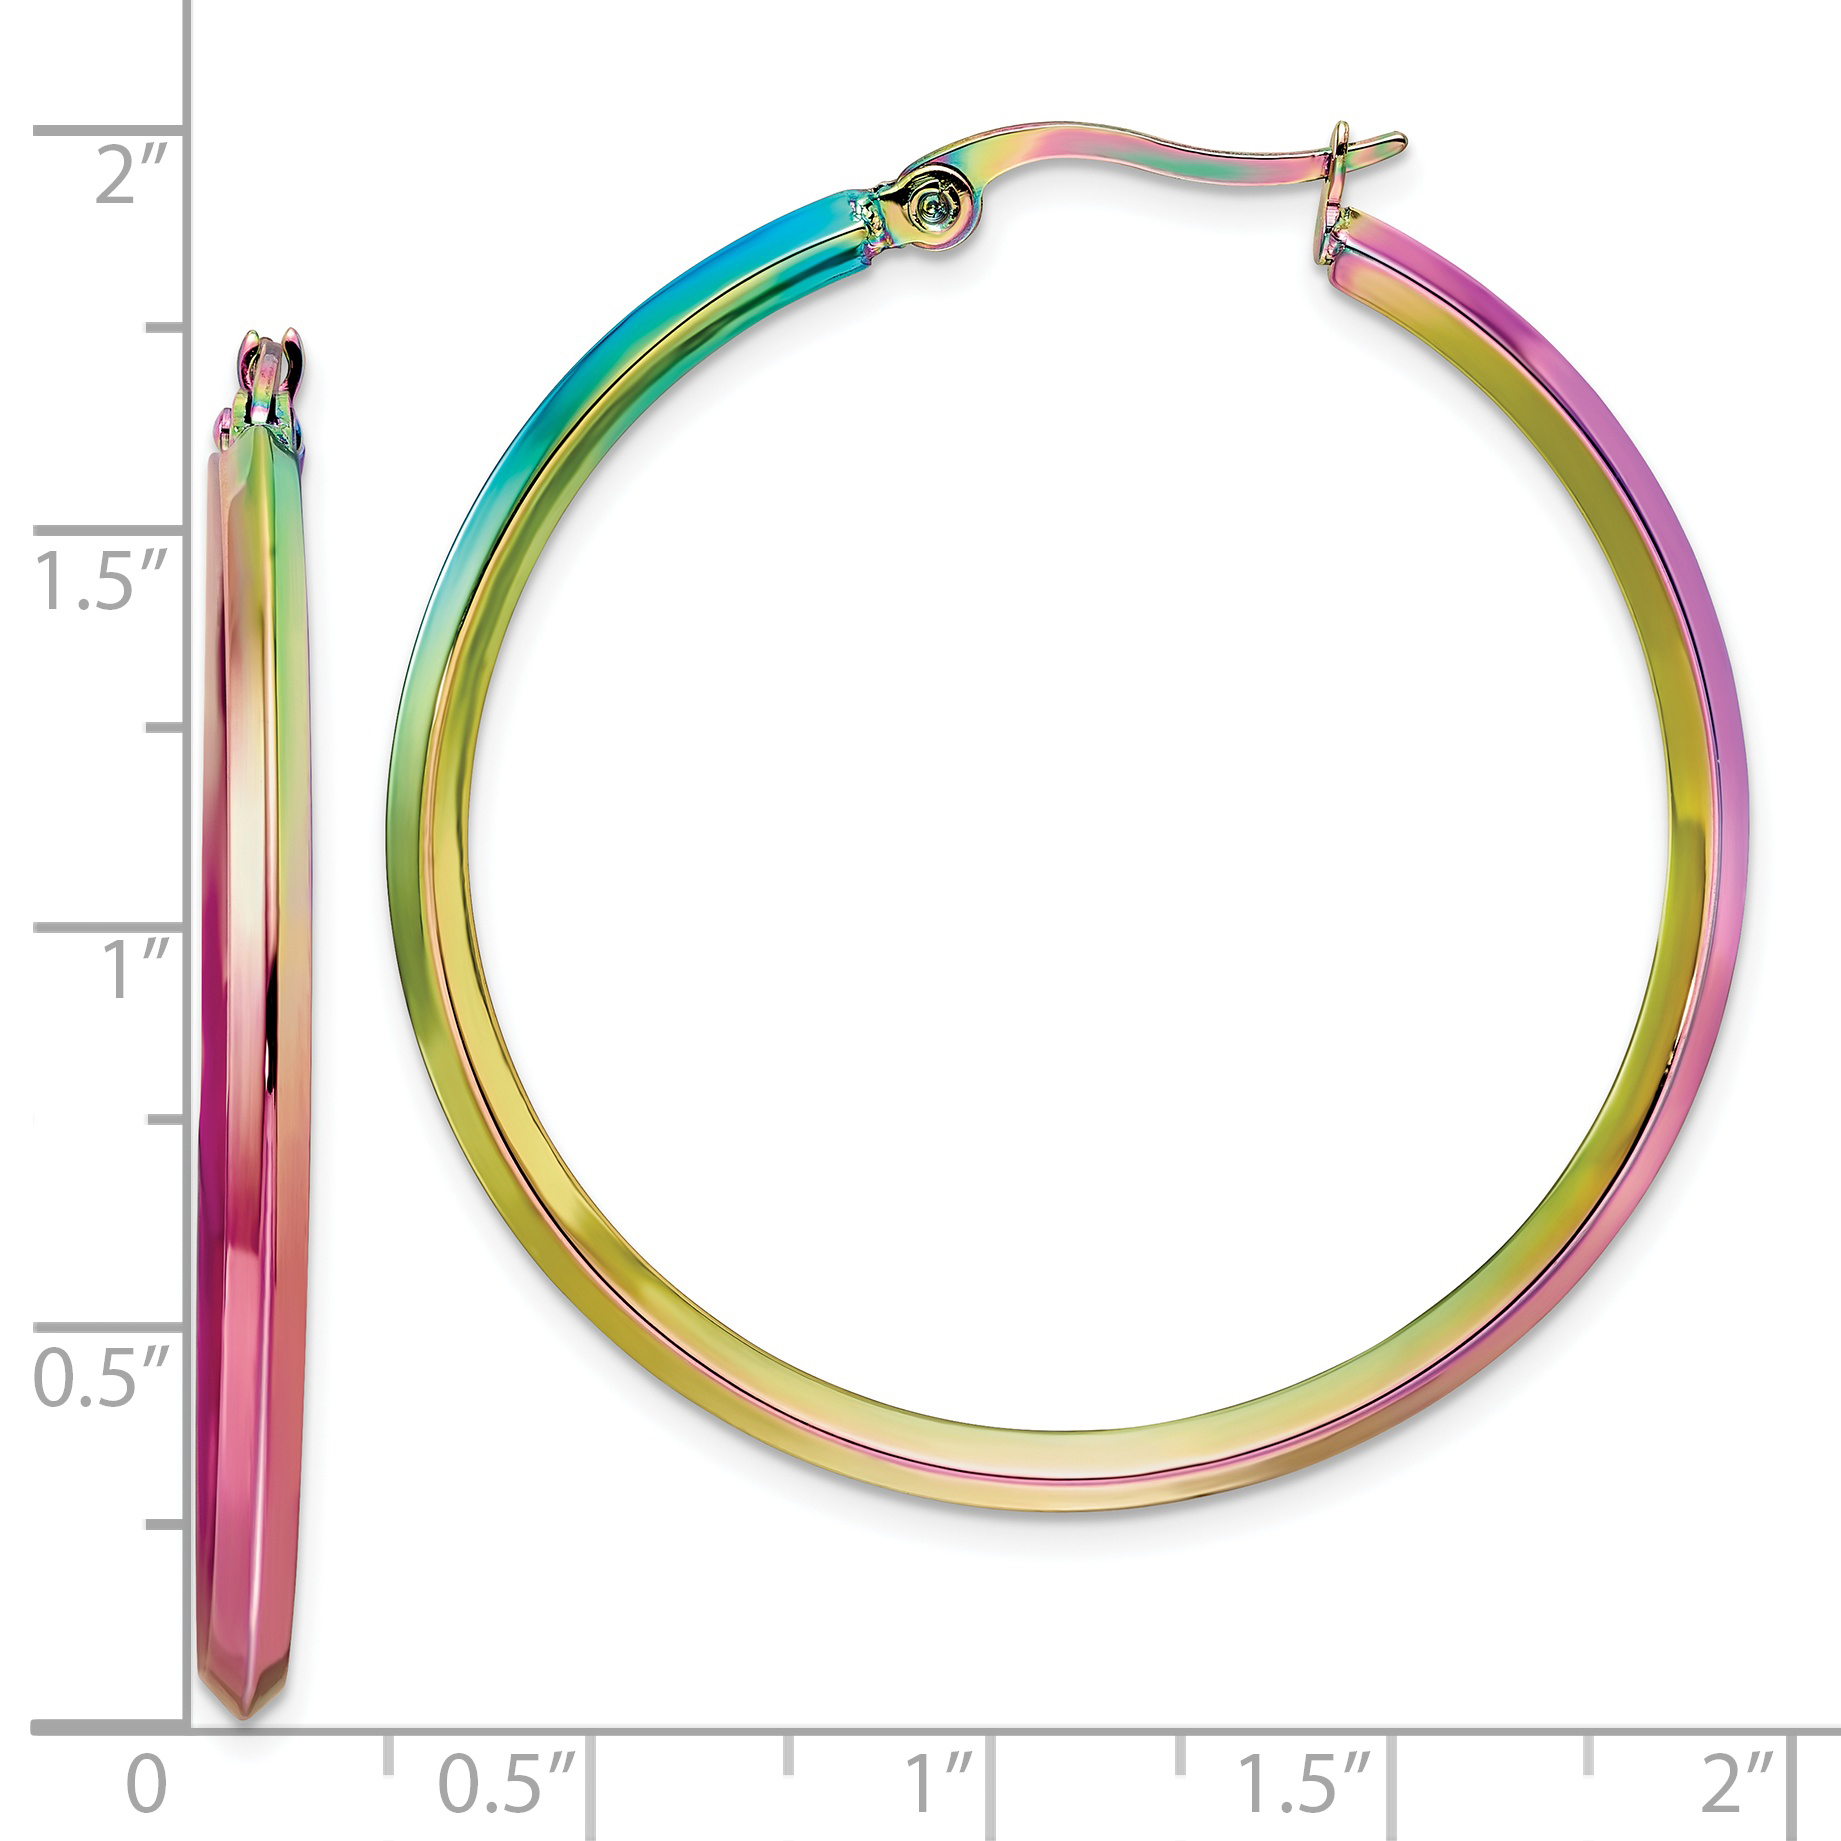 Primal Steel Stainless Steel Rainbow IP-plated 2.5mm Hoop Earrings - image 3 of 7